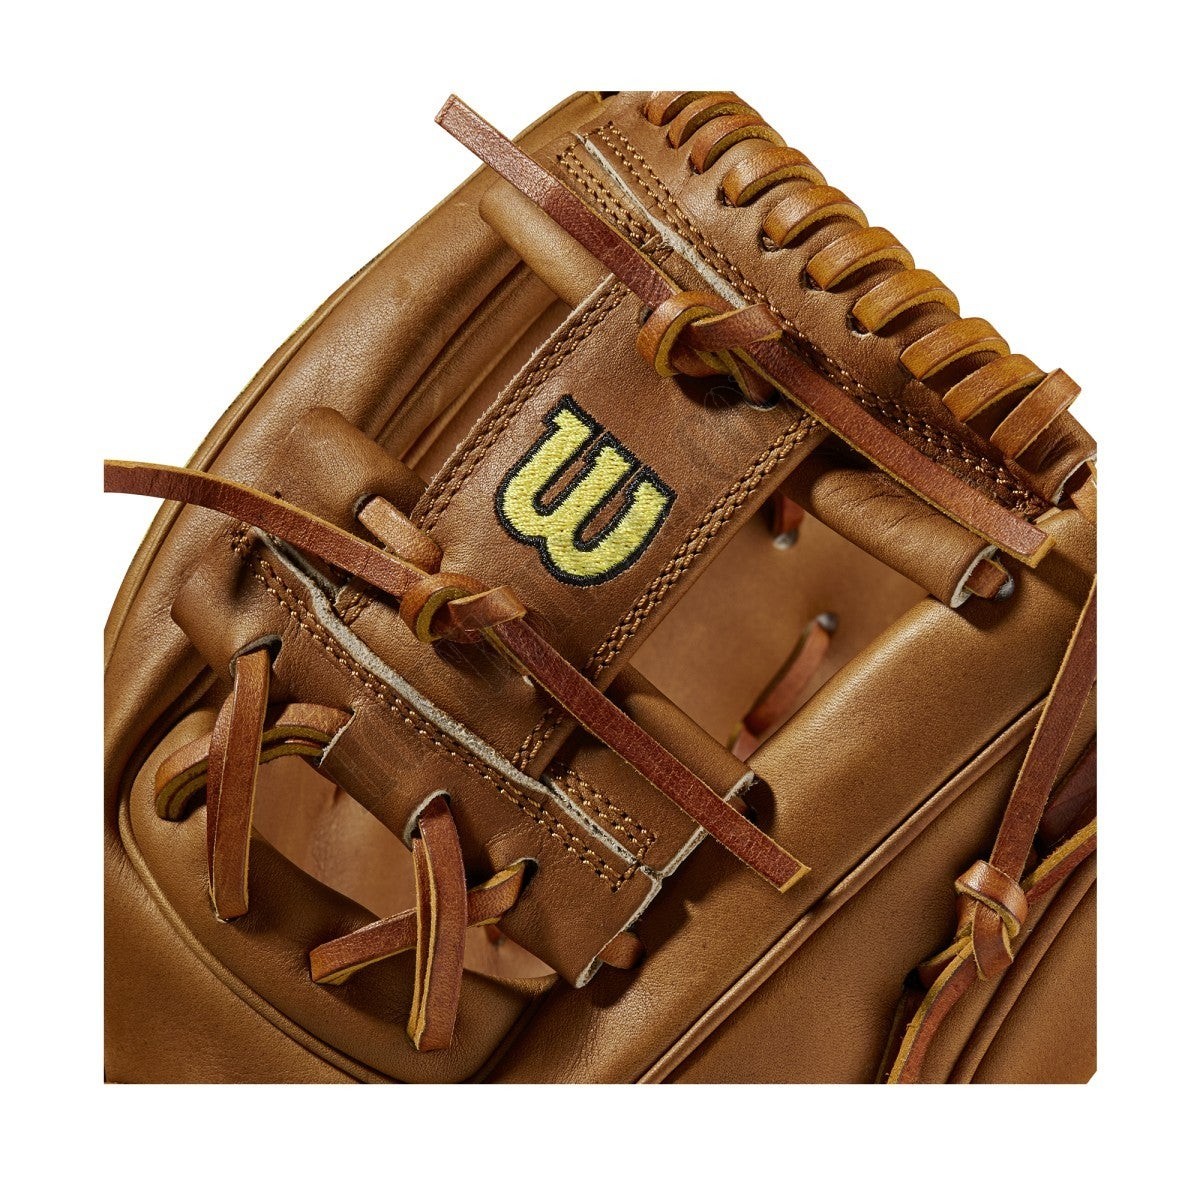 2021 A2000 DP15 11.5" Infield Baseball Glove ● Wilson Promotions - -5